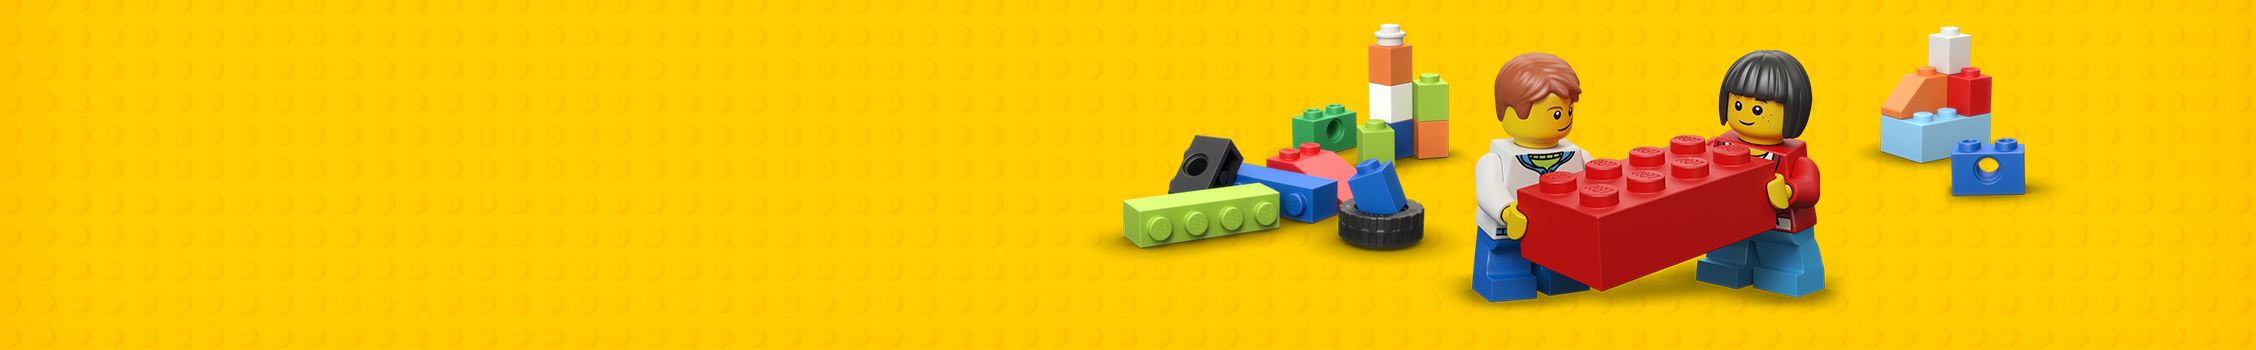 Brickkampioen LEGO banner